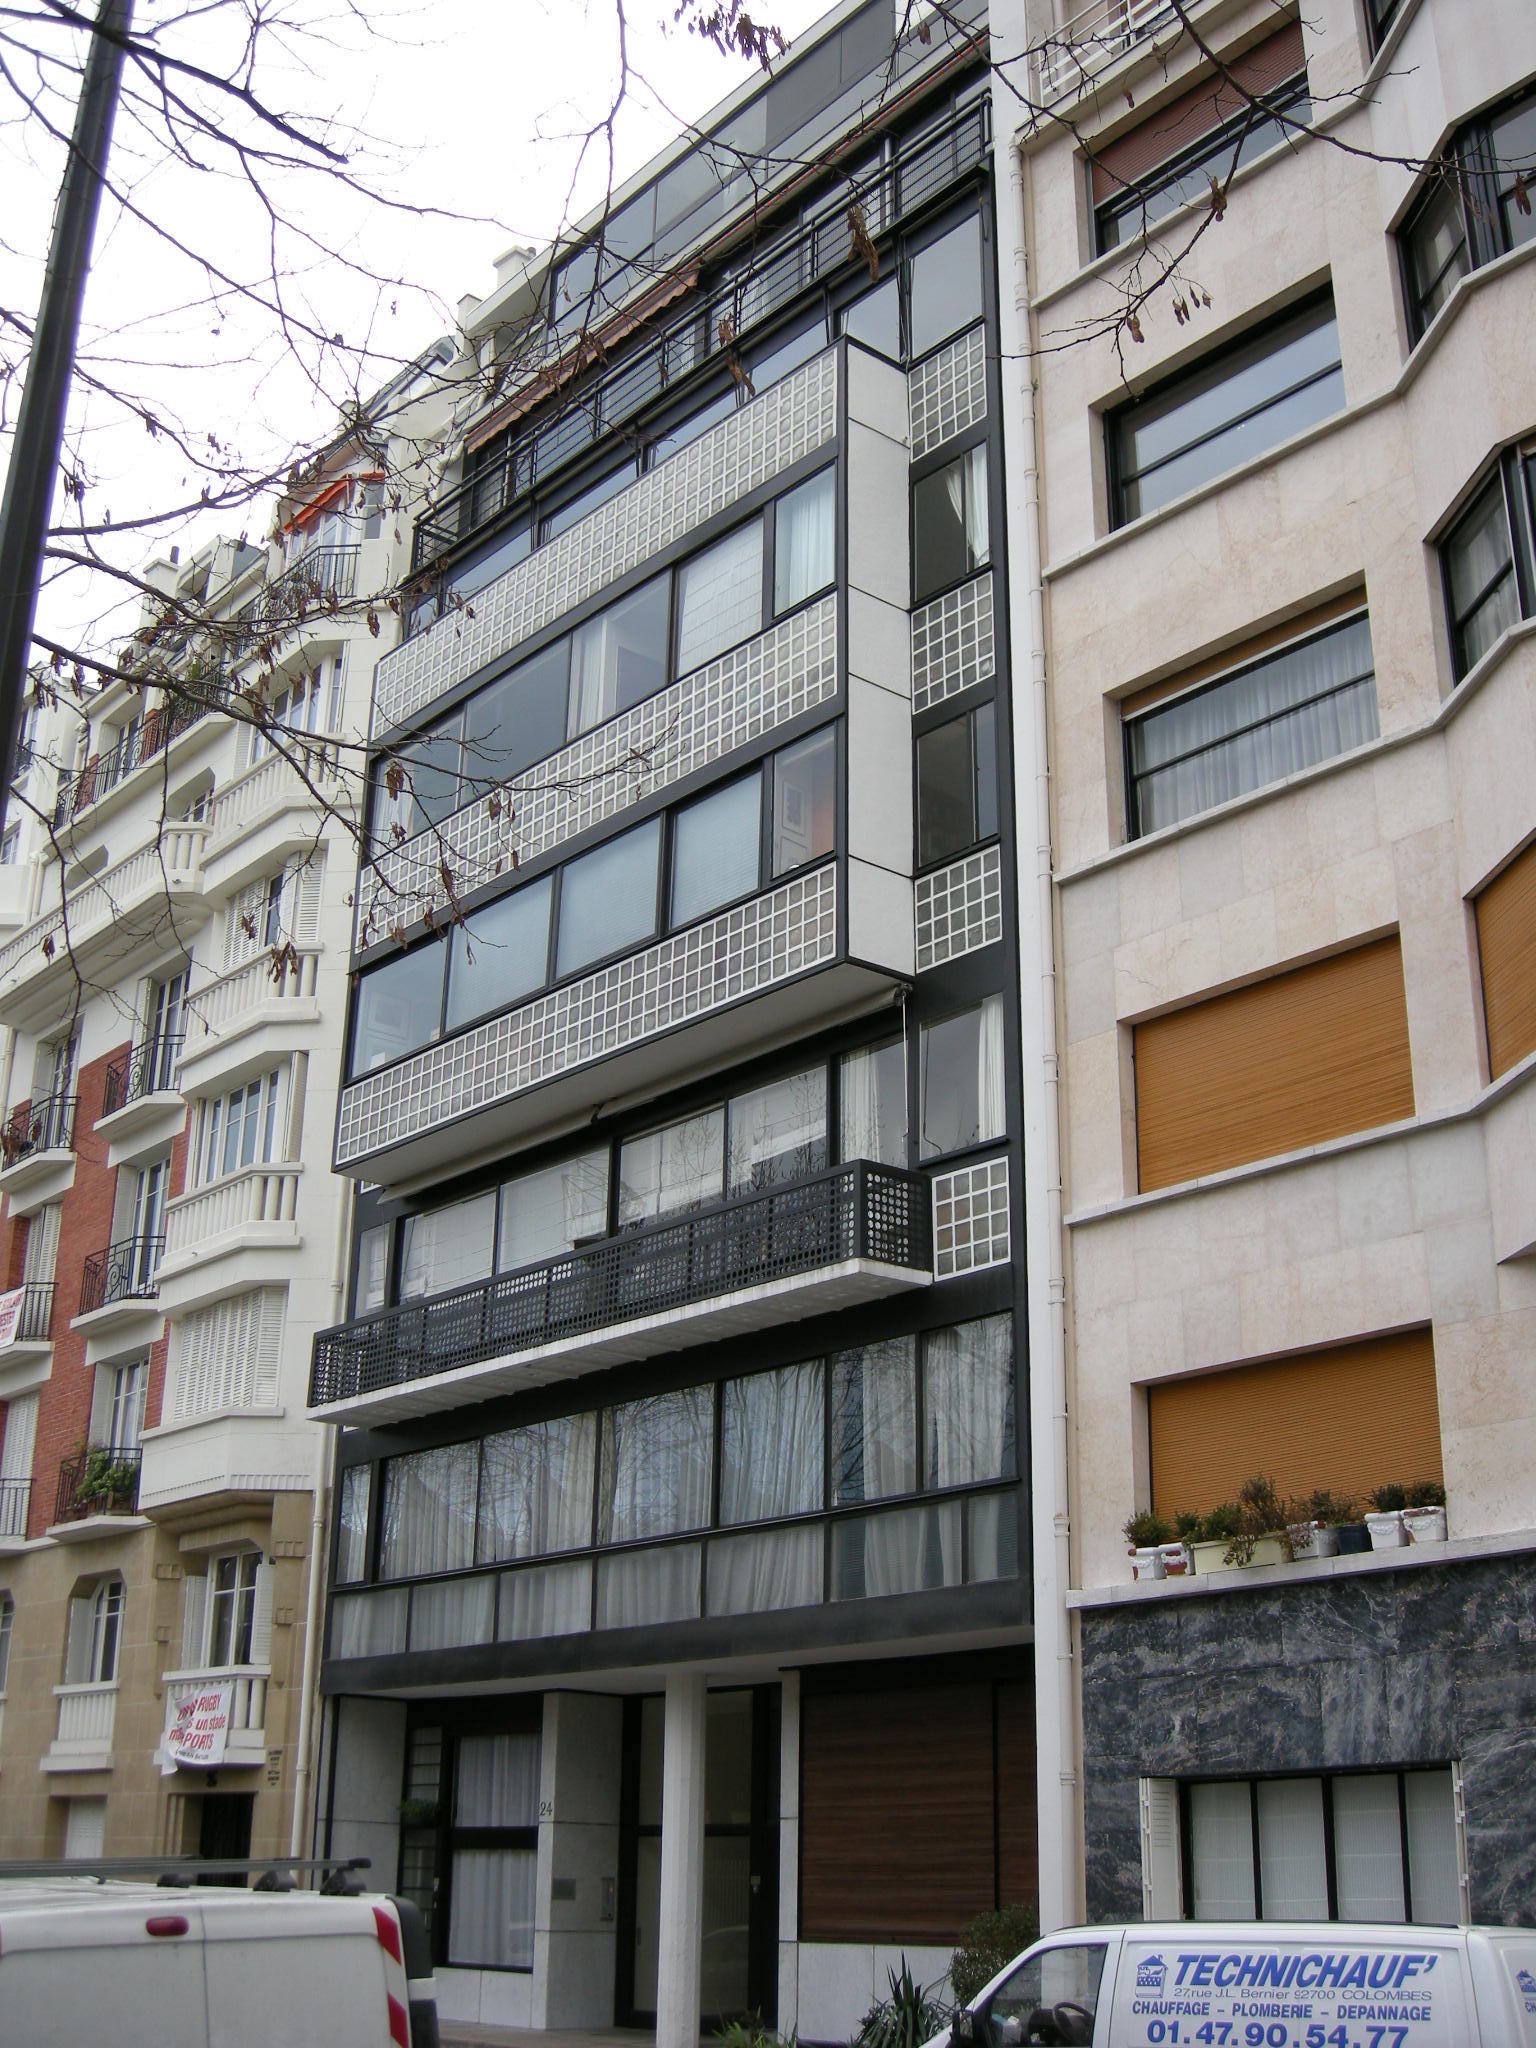 Blick auf eine Häuserzeile mit drei Häusern, wovon das mittlere viele Glasbausteine enthält. Le Corbusier, Immeuble Molitor, Paris, Foto: I, Sailko, CC BY-SA 3.0, via Wikimedia Commons